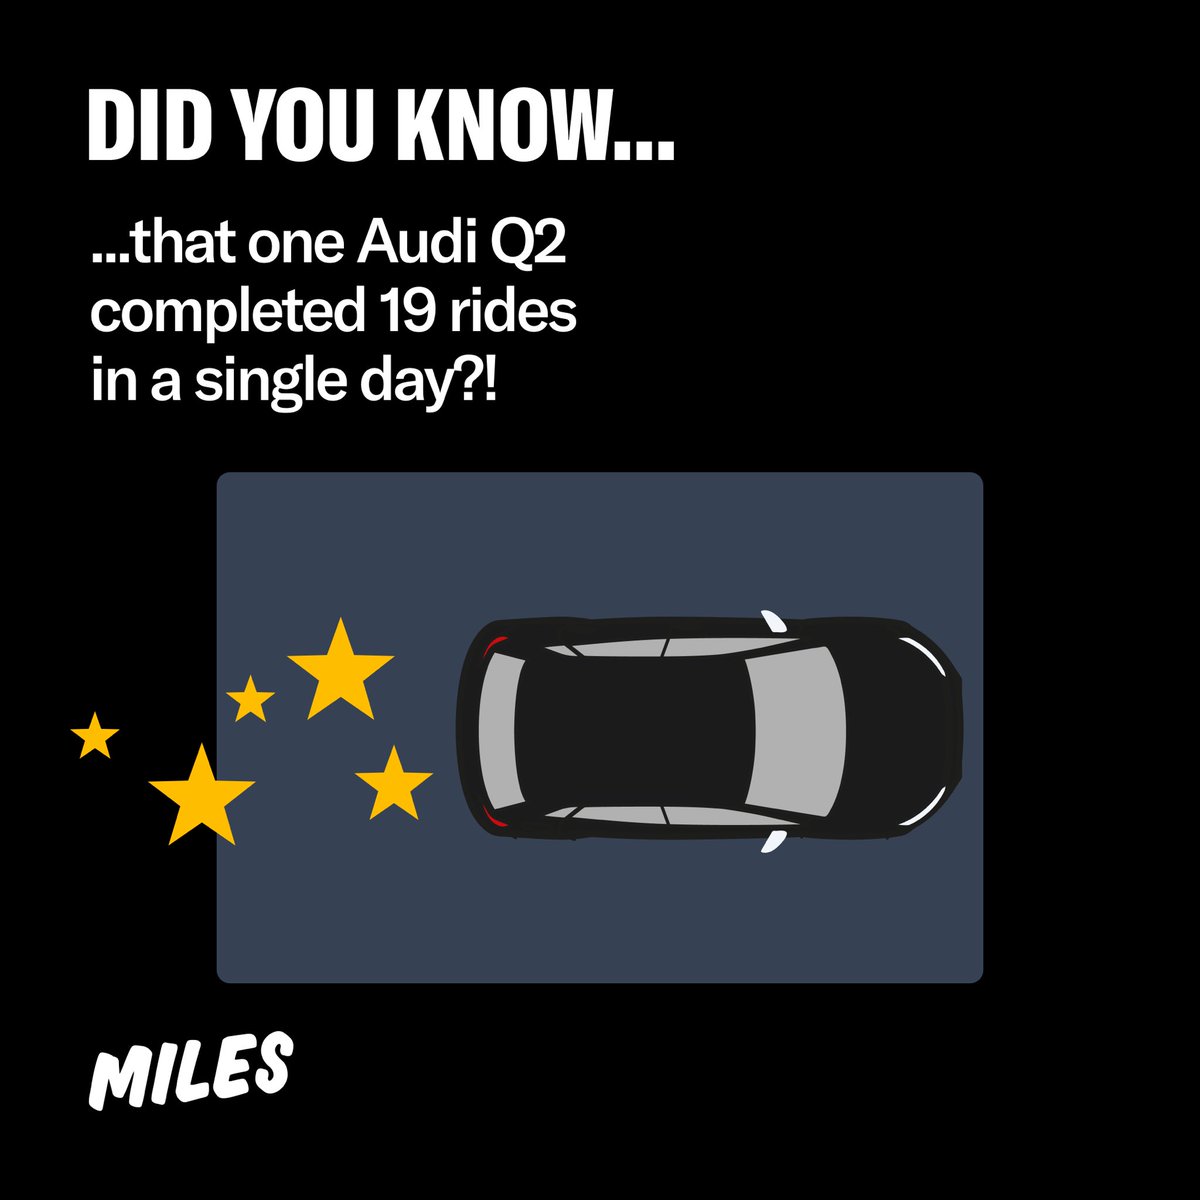 Entdecke unseren High-Performer: den Audi Q2! 🌟 Am 8. Dezember dominierte ein MILES Q2 die Straßen, indem er an einem einzigen Tag beeindruckende 19 Fahrten absolvierte.

#miles #milesmobility #highperformer #audi #audiq2 #rides #carsharing